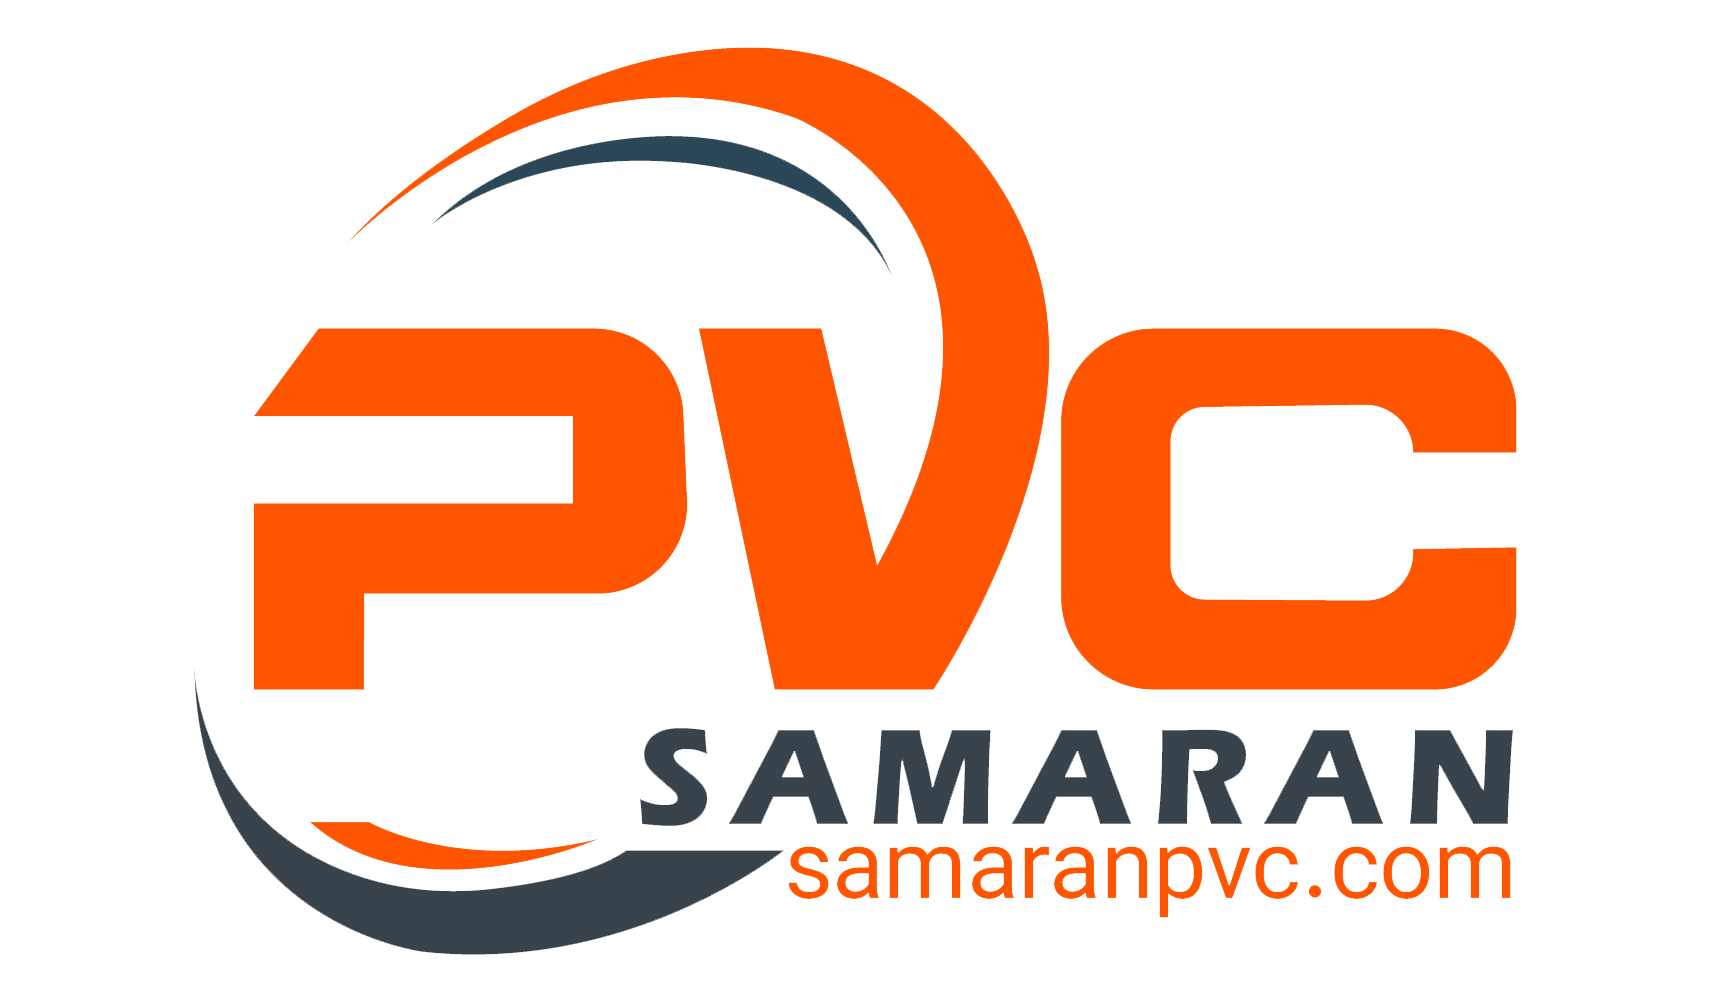 ساماران pvc | تولید کننده چسب وکیوم و روکش پی وی سی